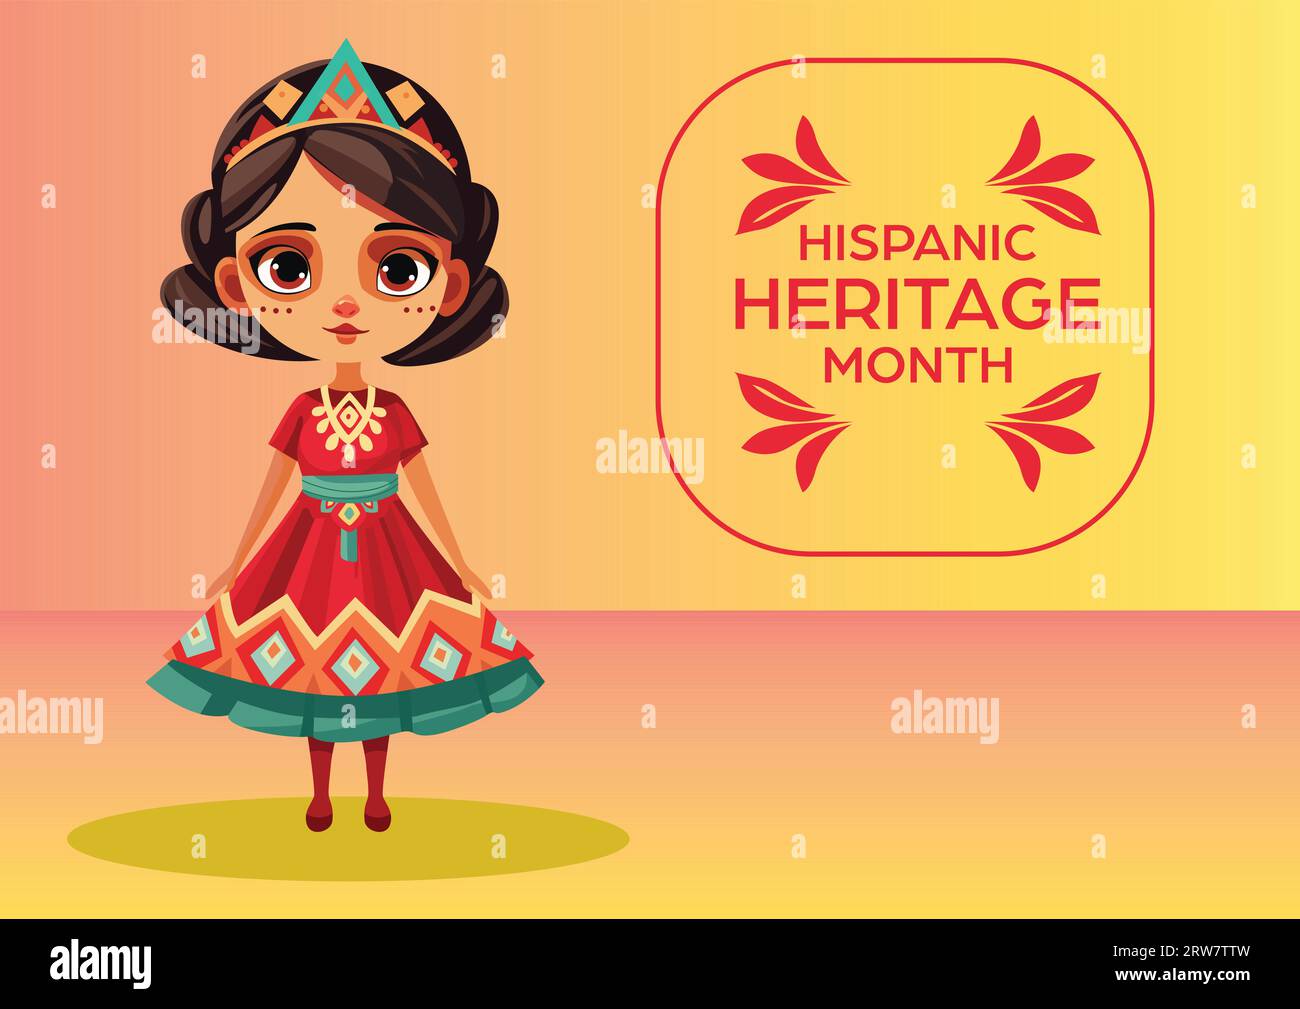 Carte postale vibrante représentant une jolie fille en costume hispanique pour célébrer le mois du patrimoine hispanique Illustration de Vecteur